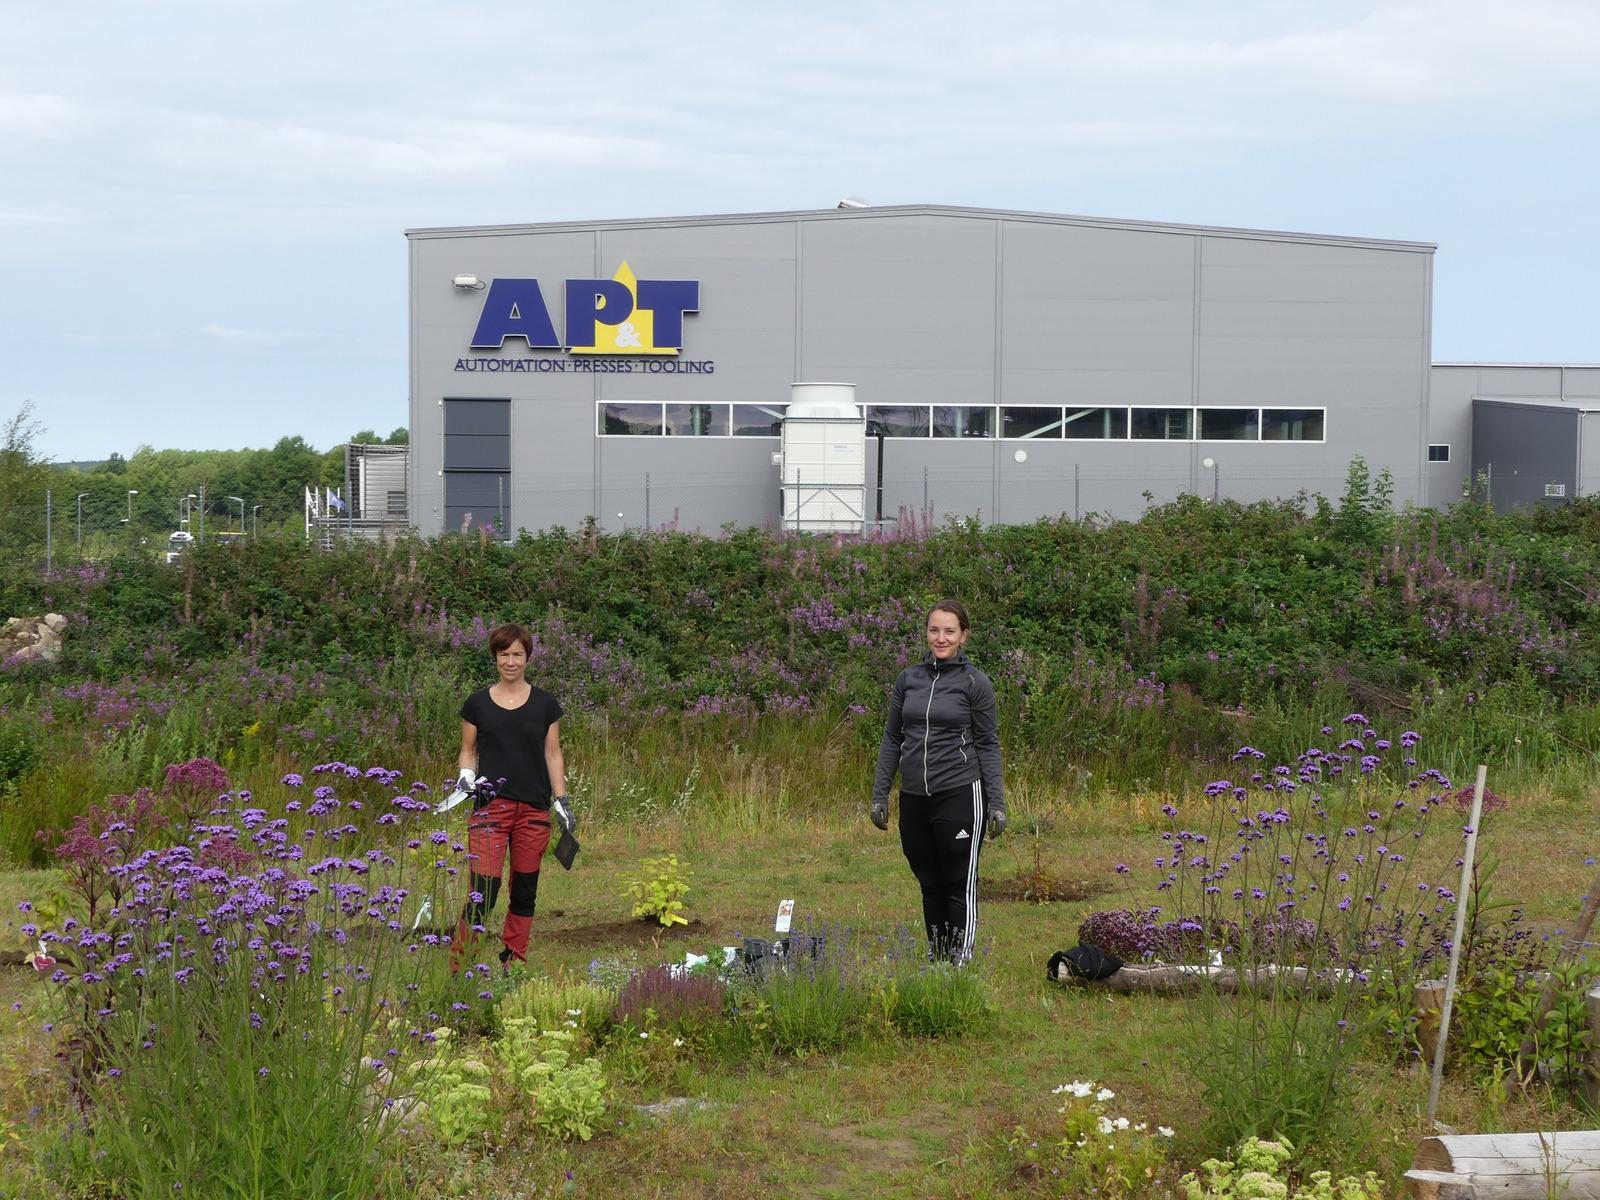 ミツバチガーデンの栽培AP&T の品質・環境調整役マリア・ラップ（Maria Rapp）氏と Götessons 持続可能性調整役エンマ・ハグマン（Emma Hagman）氏によりレナーセンのミツバチガーデンは花でいっぱいになる。 